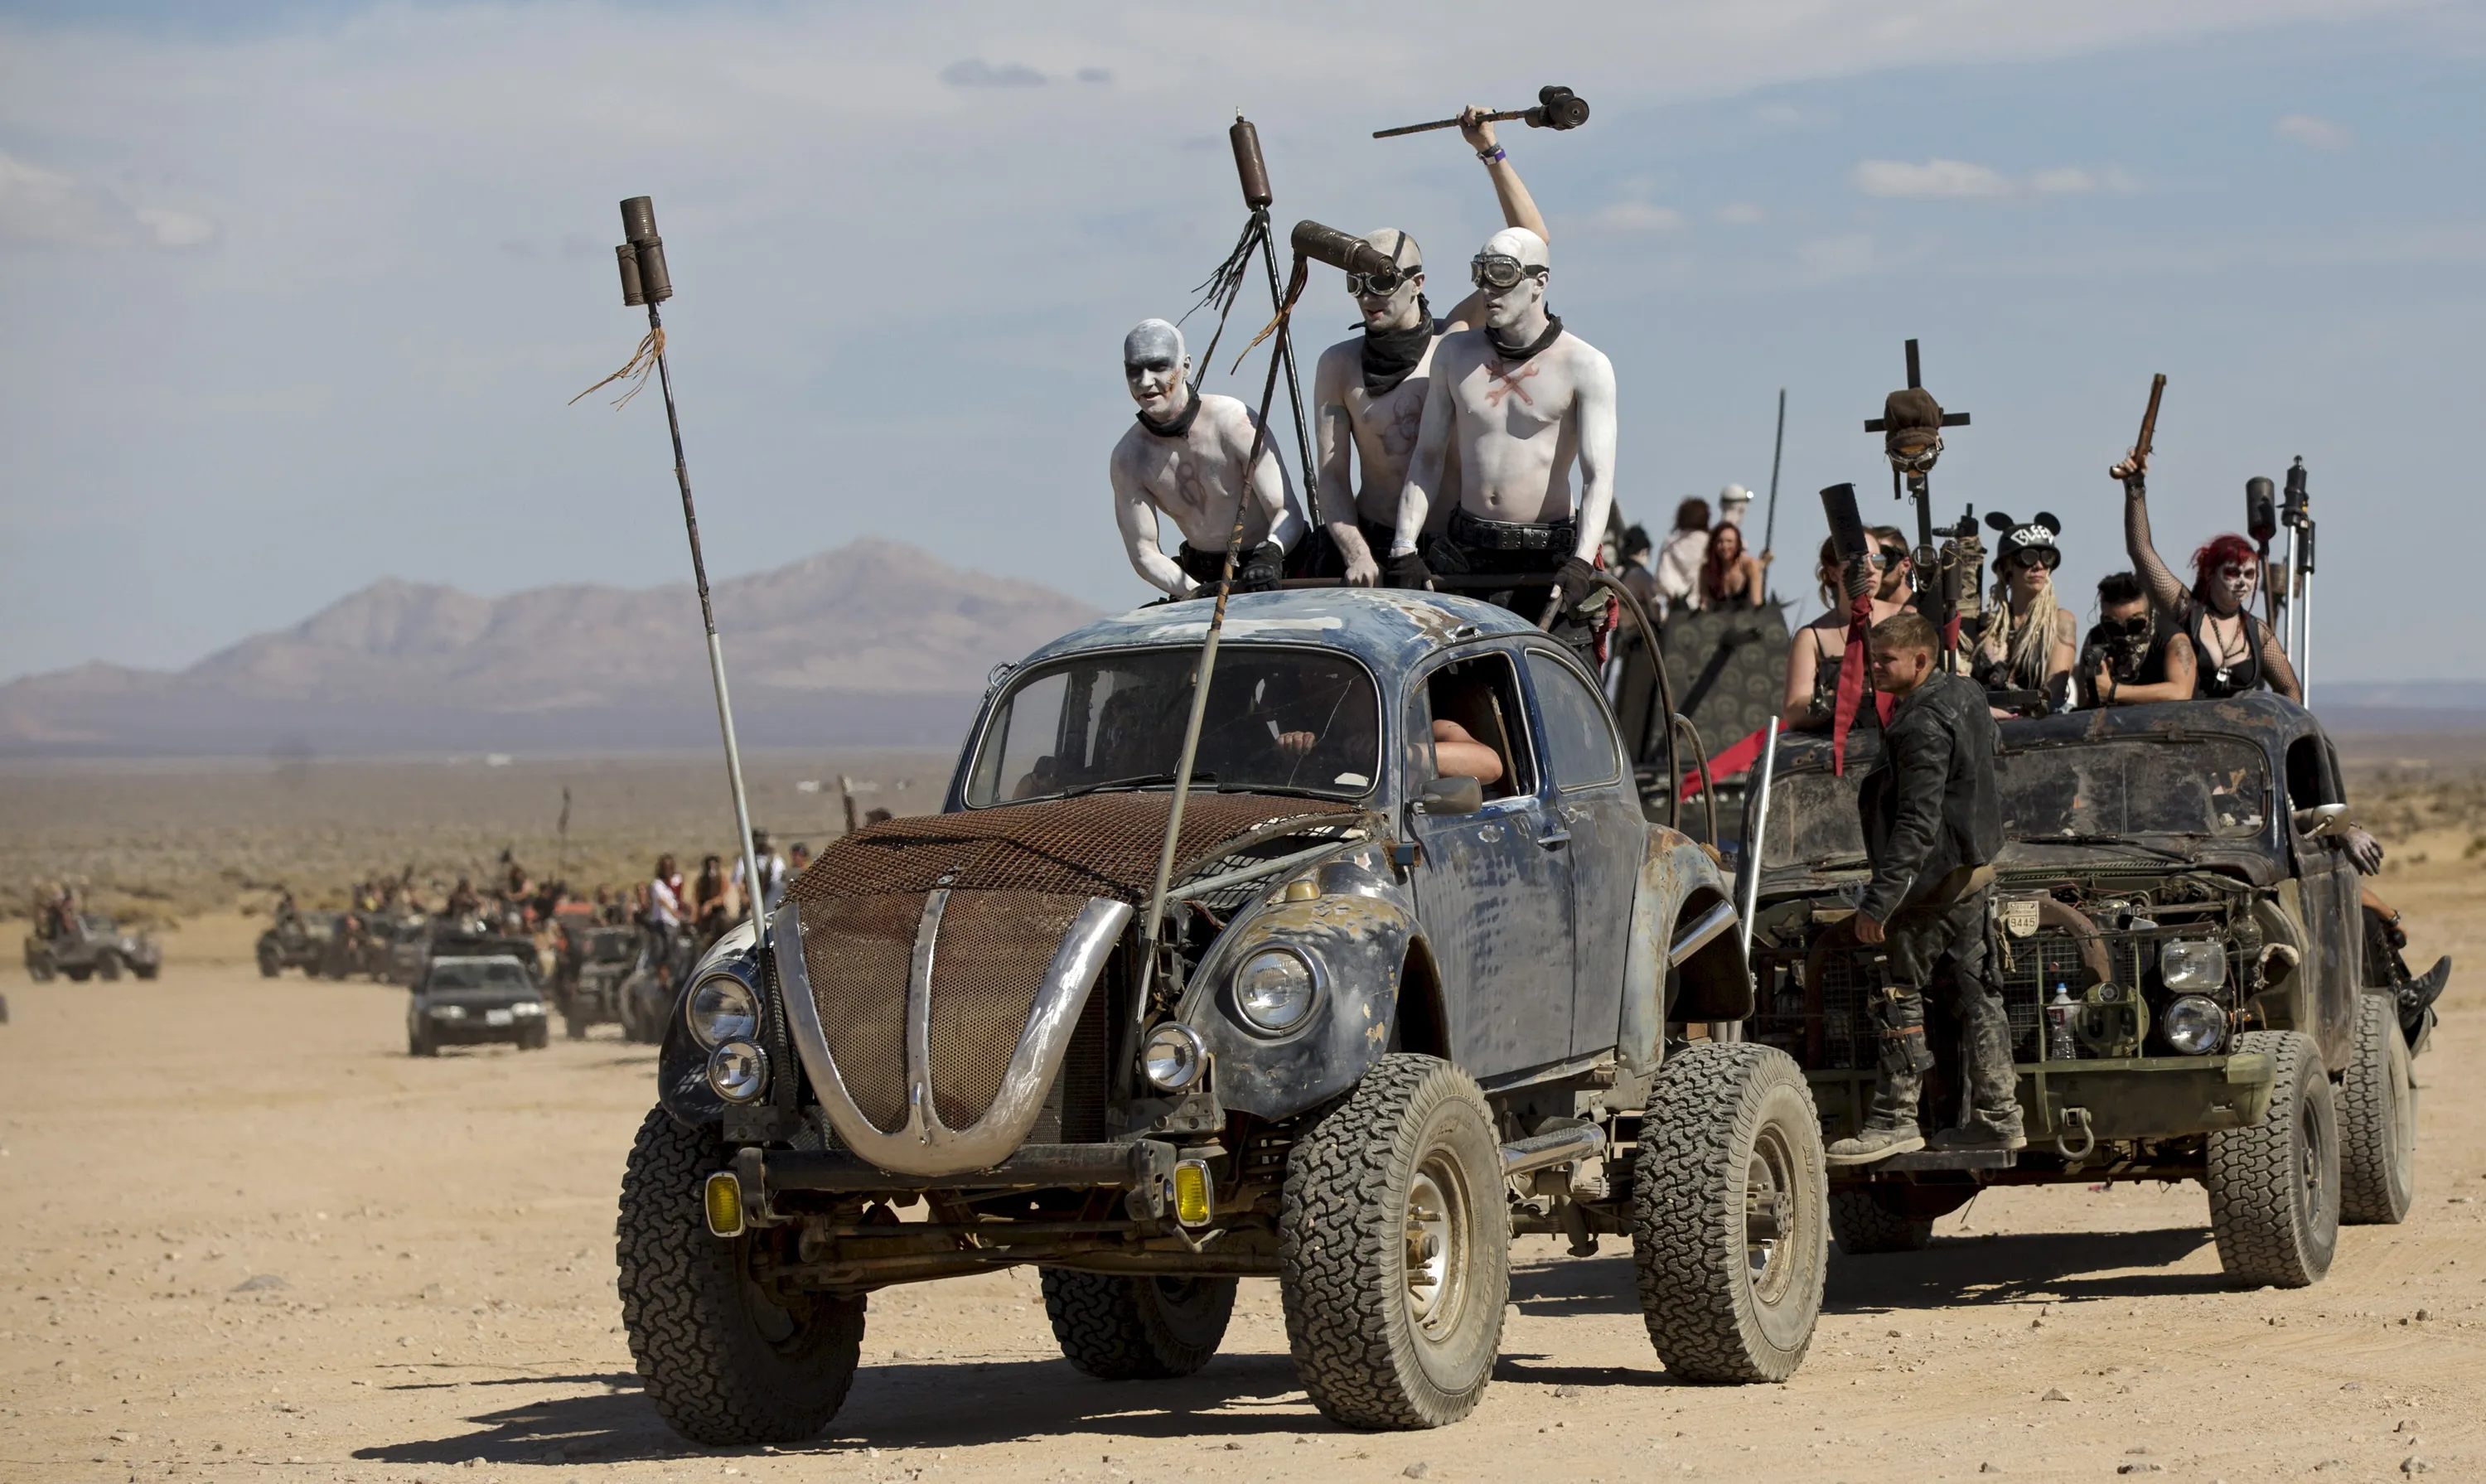 Безумный макс новый. Постапокалиптический фестиваль Wasteland weekend. Безумный Макс 2015. Mad Max дорога ярости. Фестиваль Безумный Макс в пустыне.